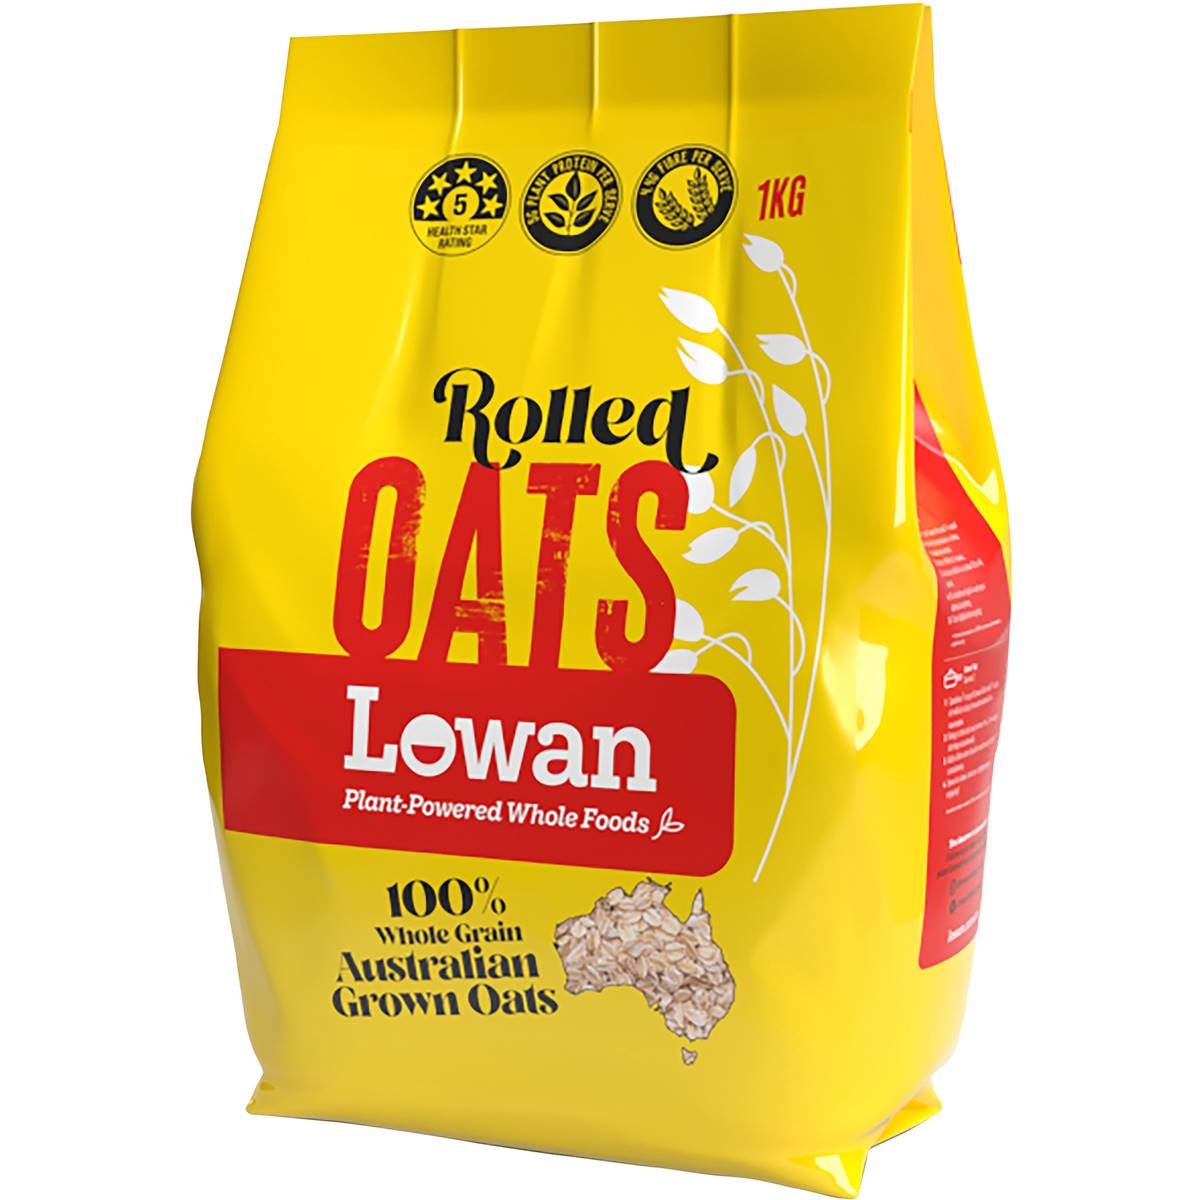 Lowan rolled oats 1kg